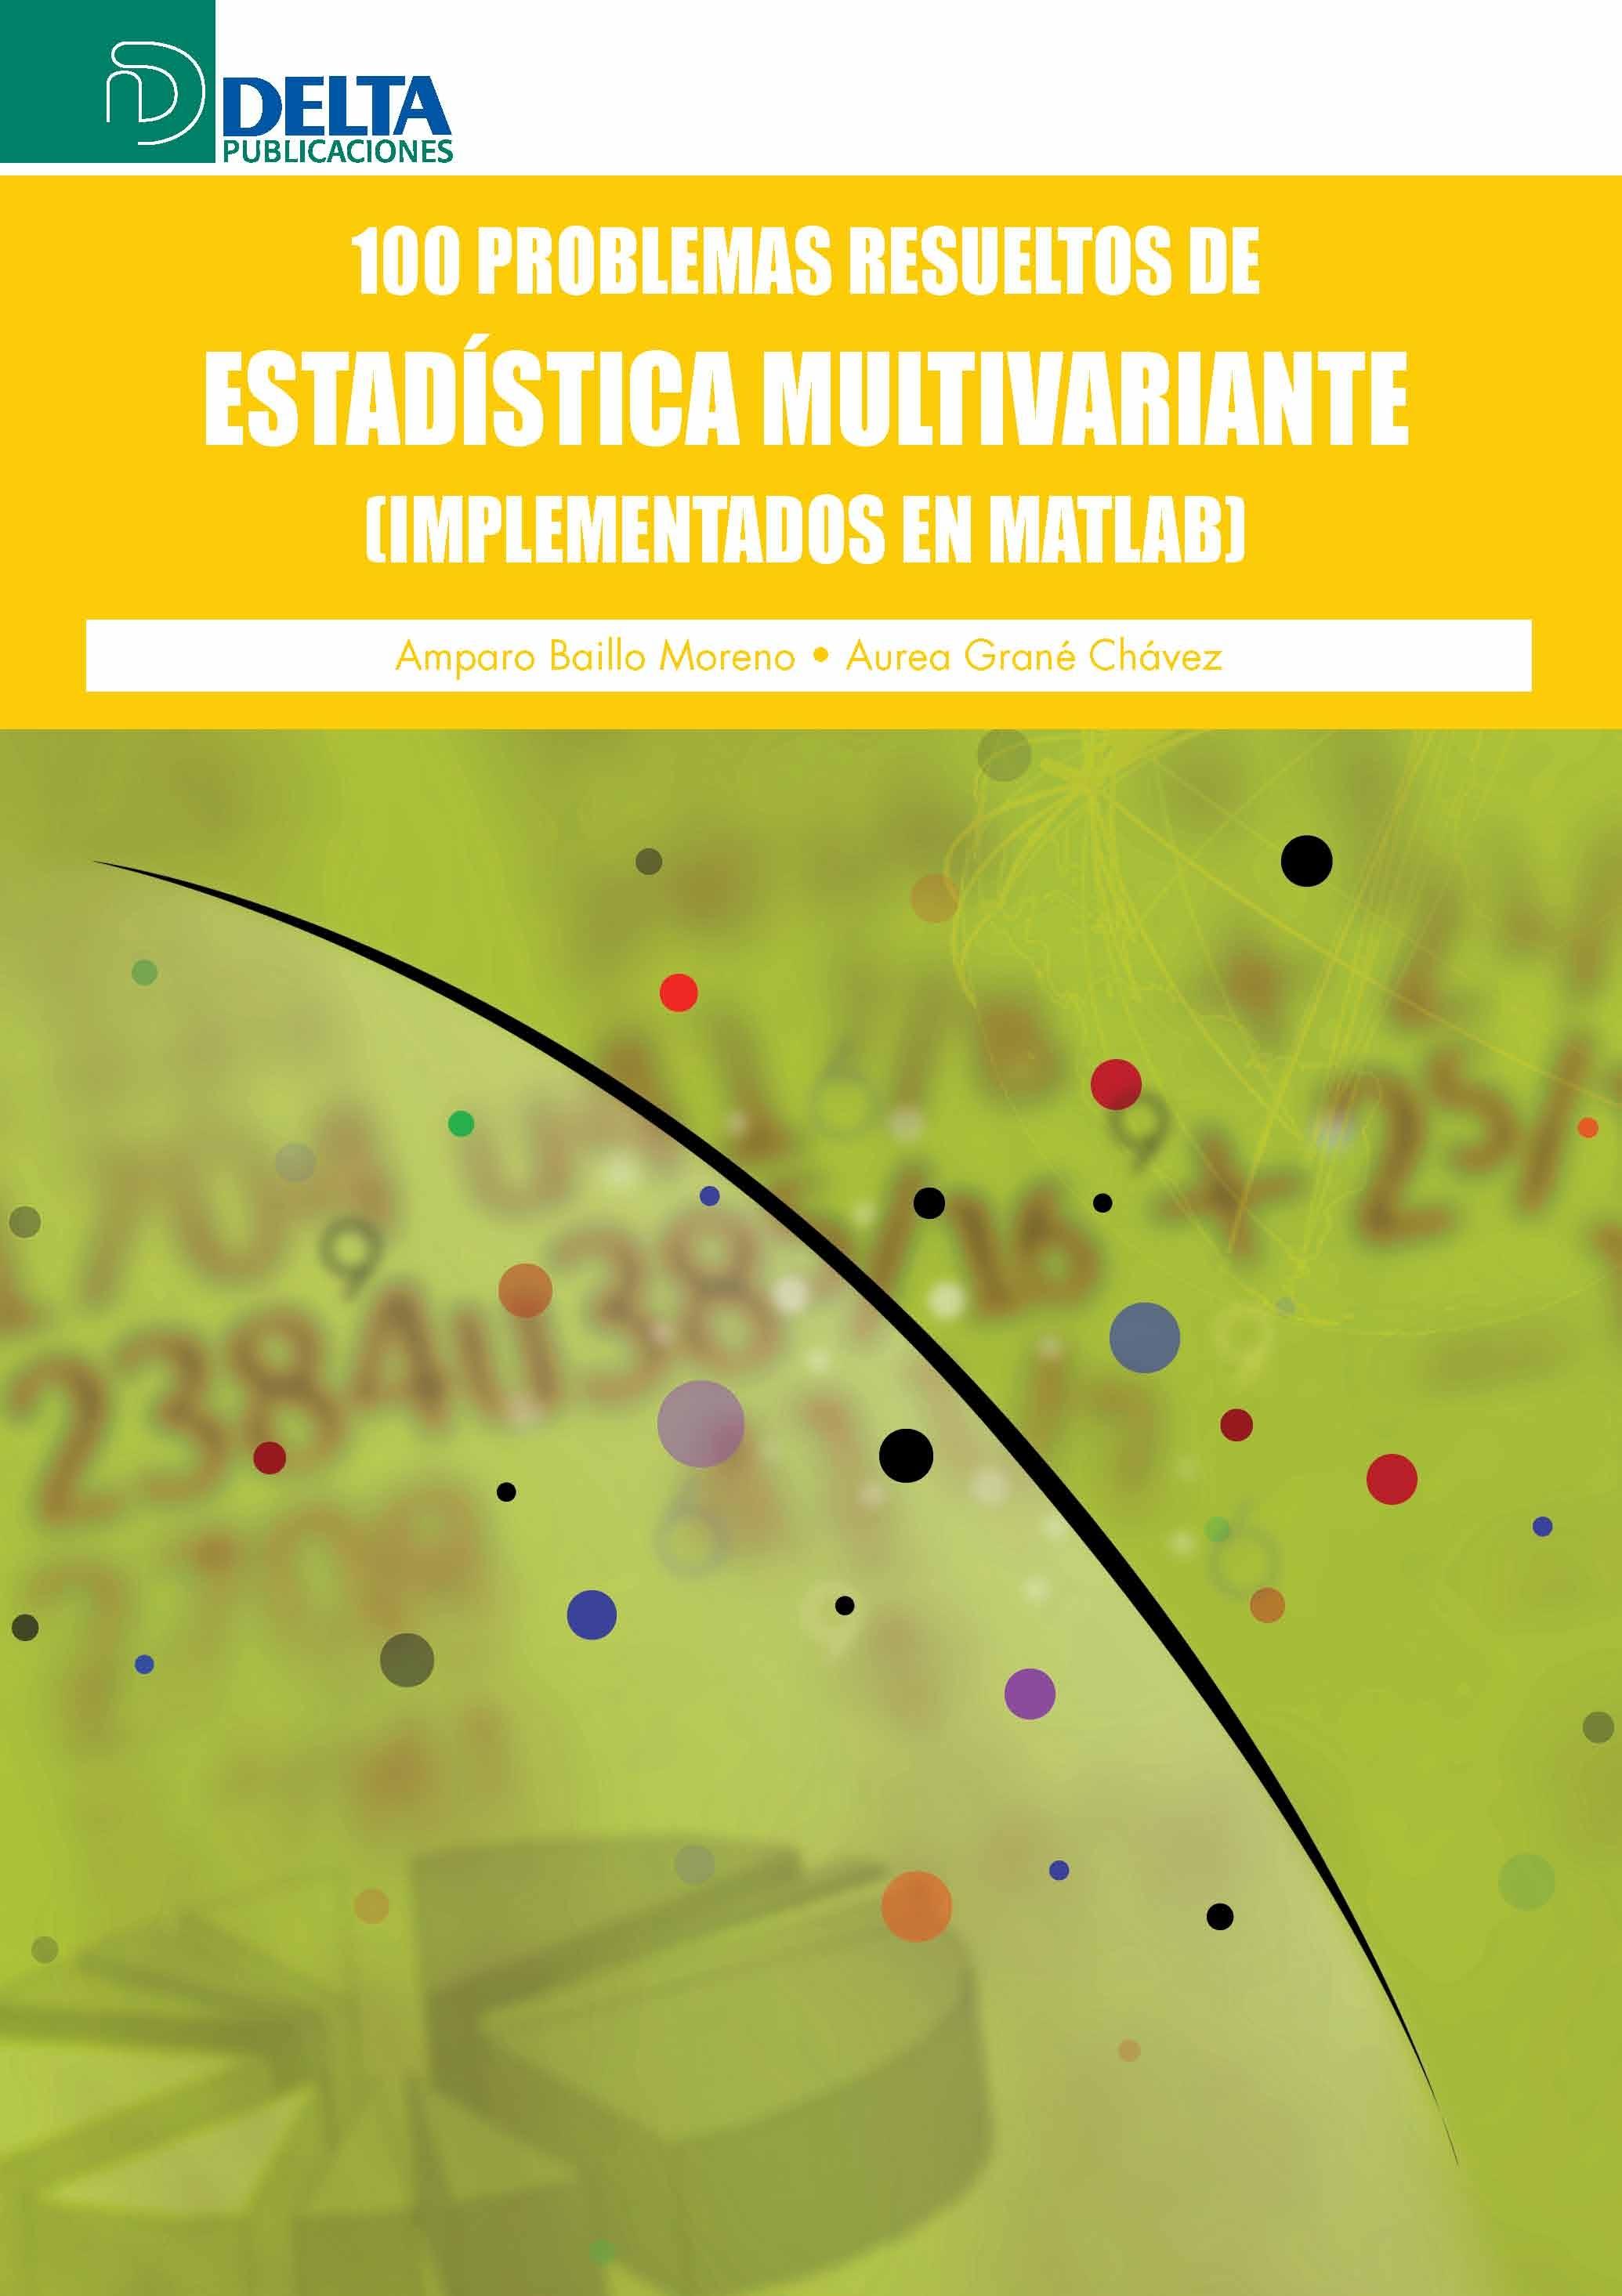 100 Problemas Resueltos de Estadística Multivariante: Implementados en Matlab